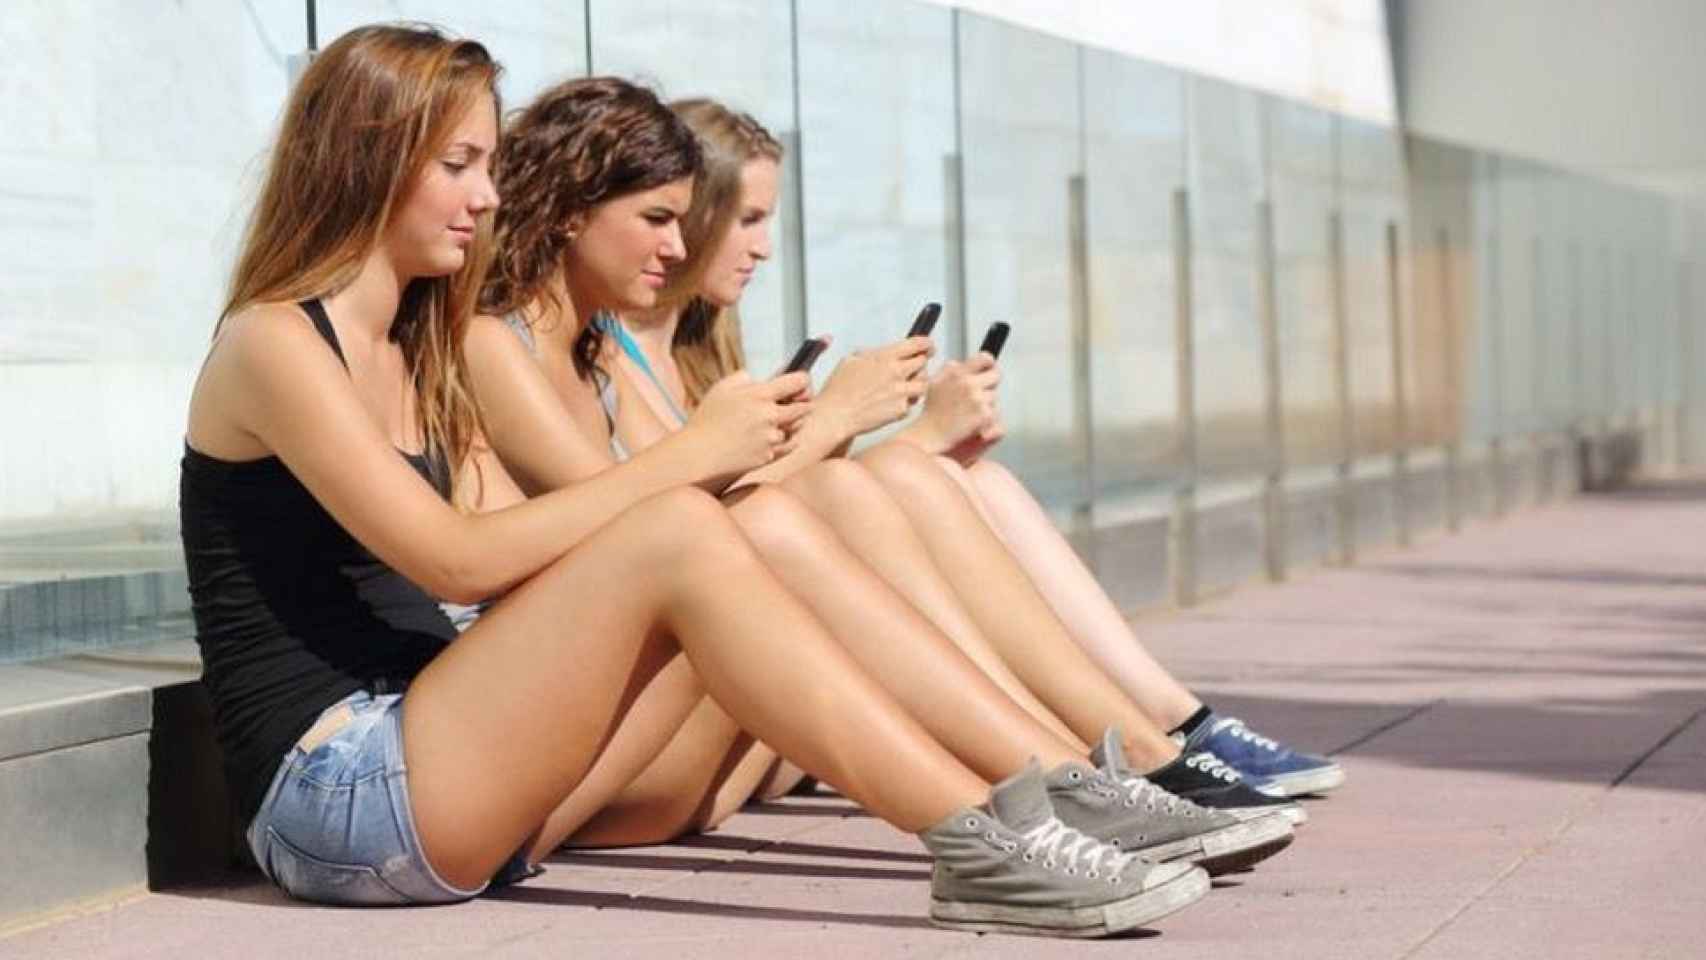 Un grupo de adolescentes mirando el móvil, una adicción que se contempla en el plan contra las drogas de Barcelona / CG